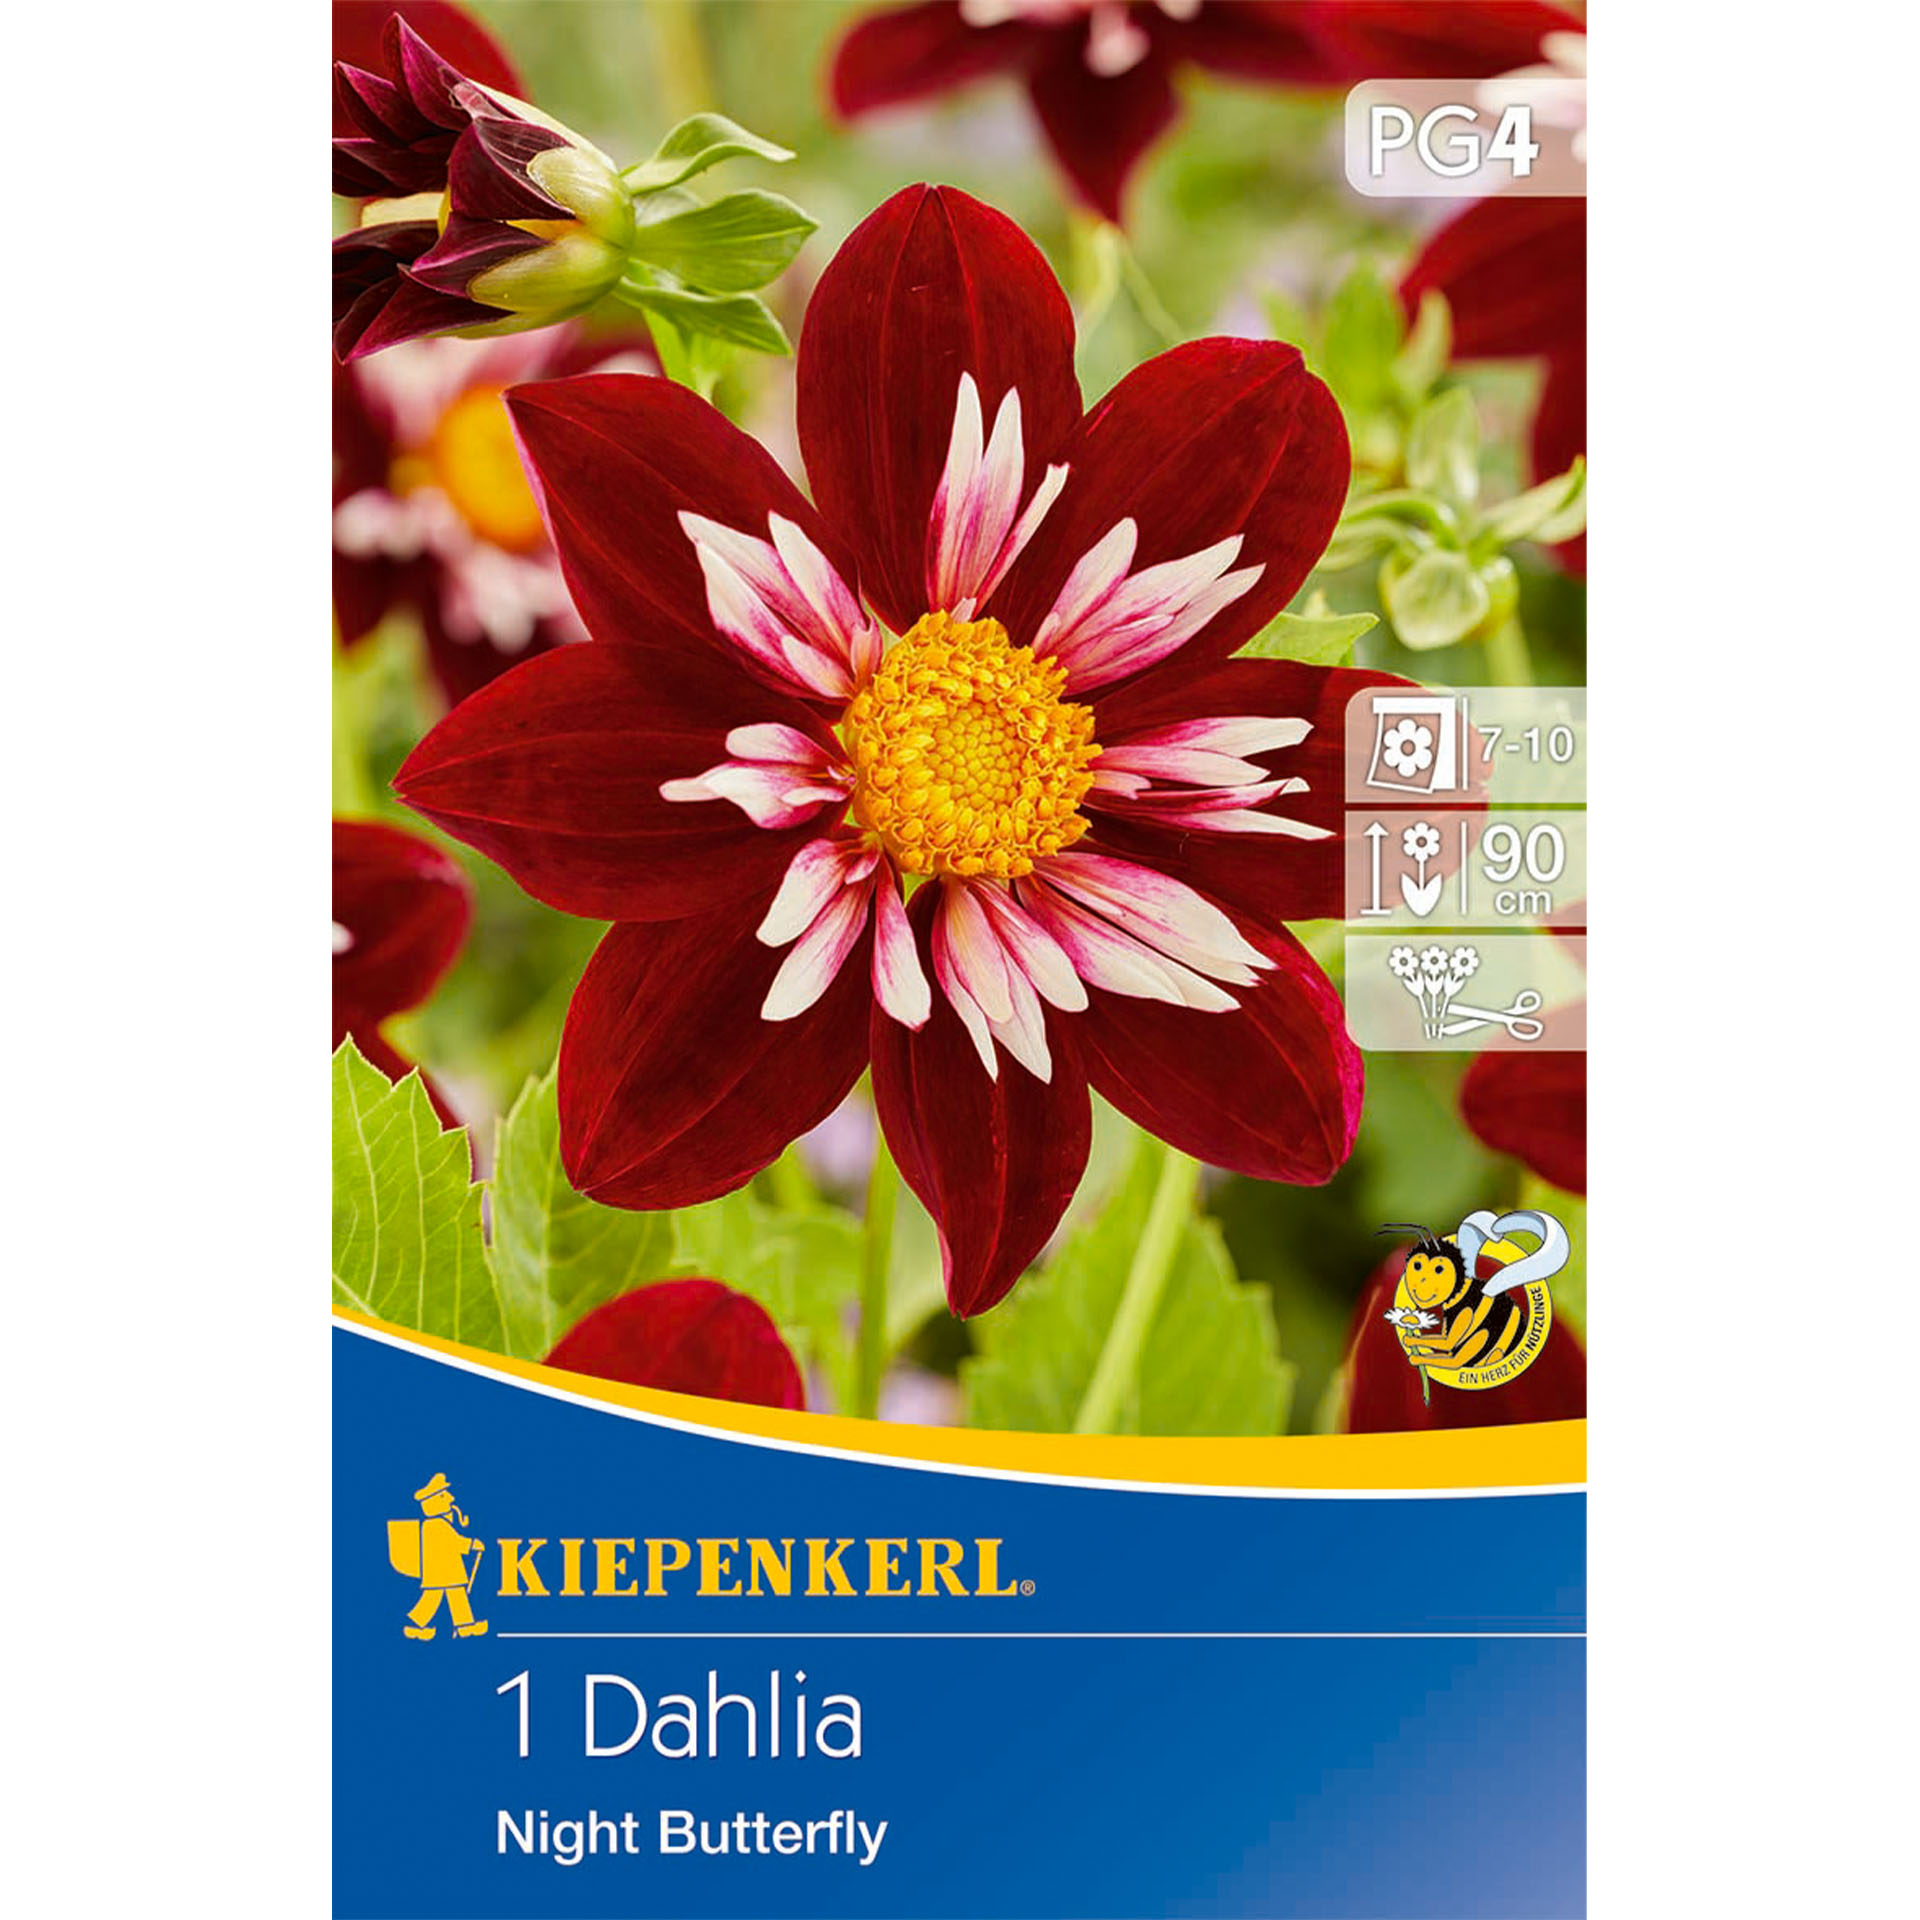 Blumenzwiebeln Halskrausen-Dahlie Dahlia Beetblume, Werbung, Plakat, Blume, Pflanze, Blütenblatt